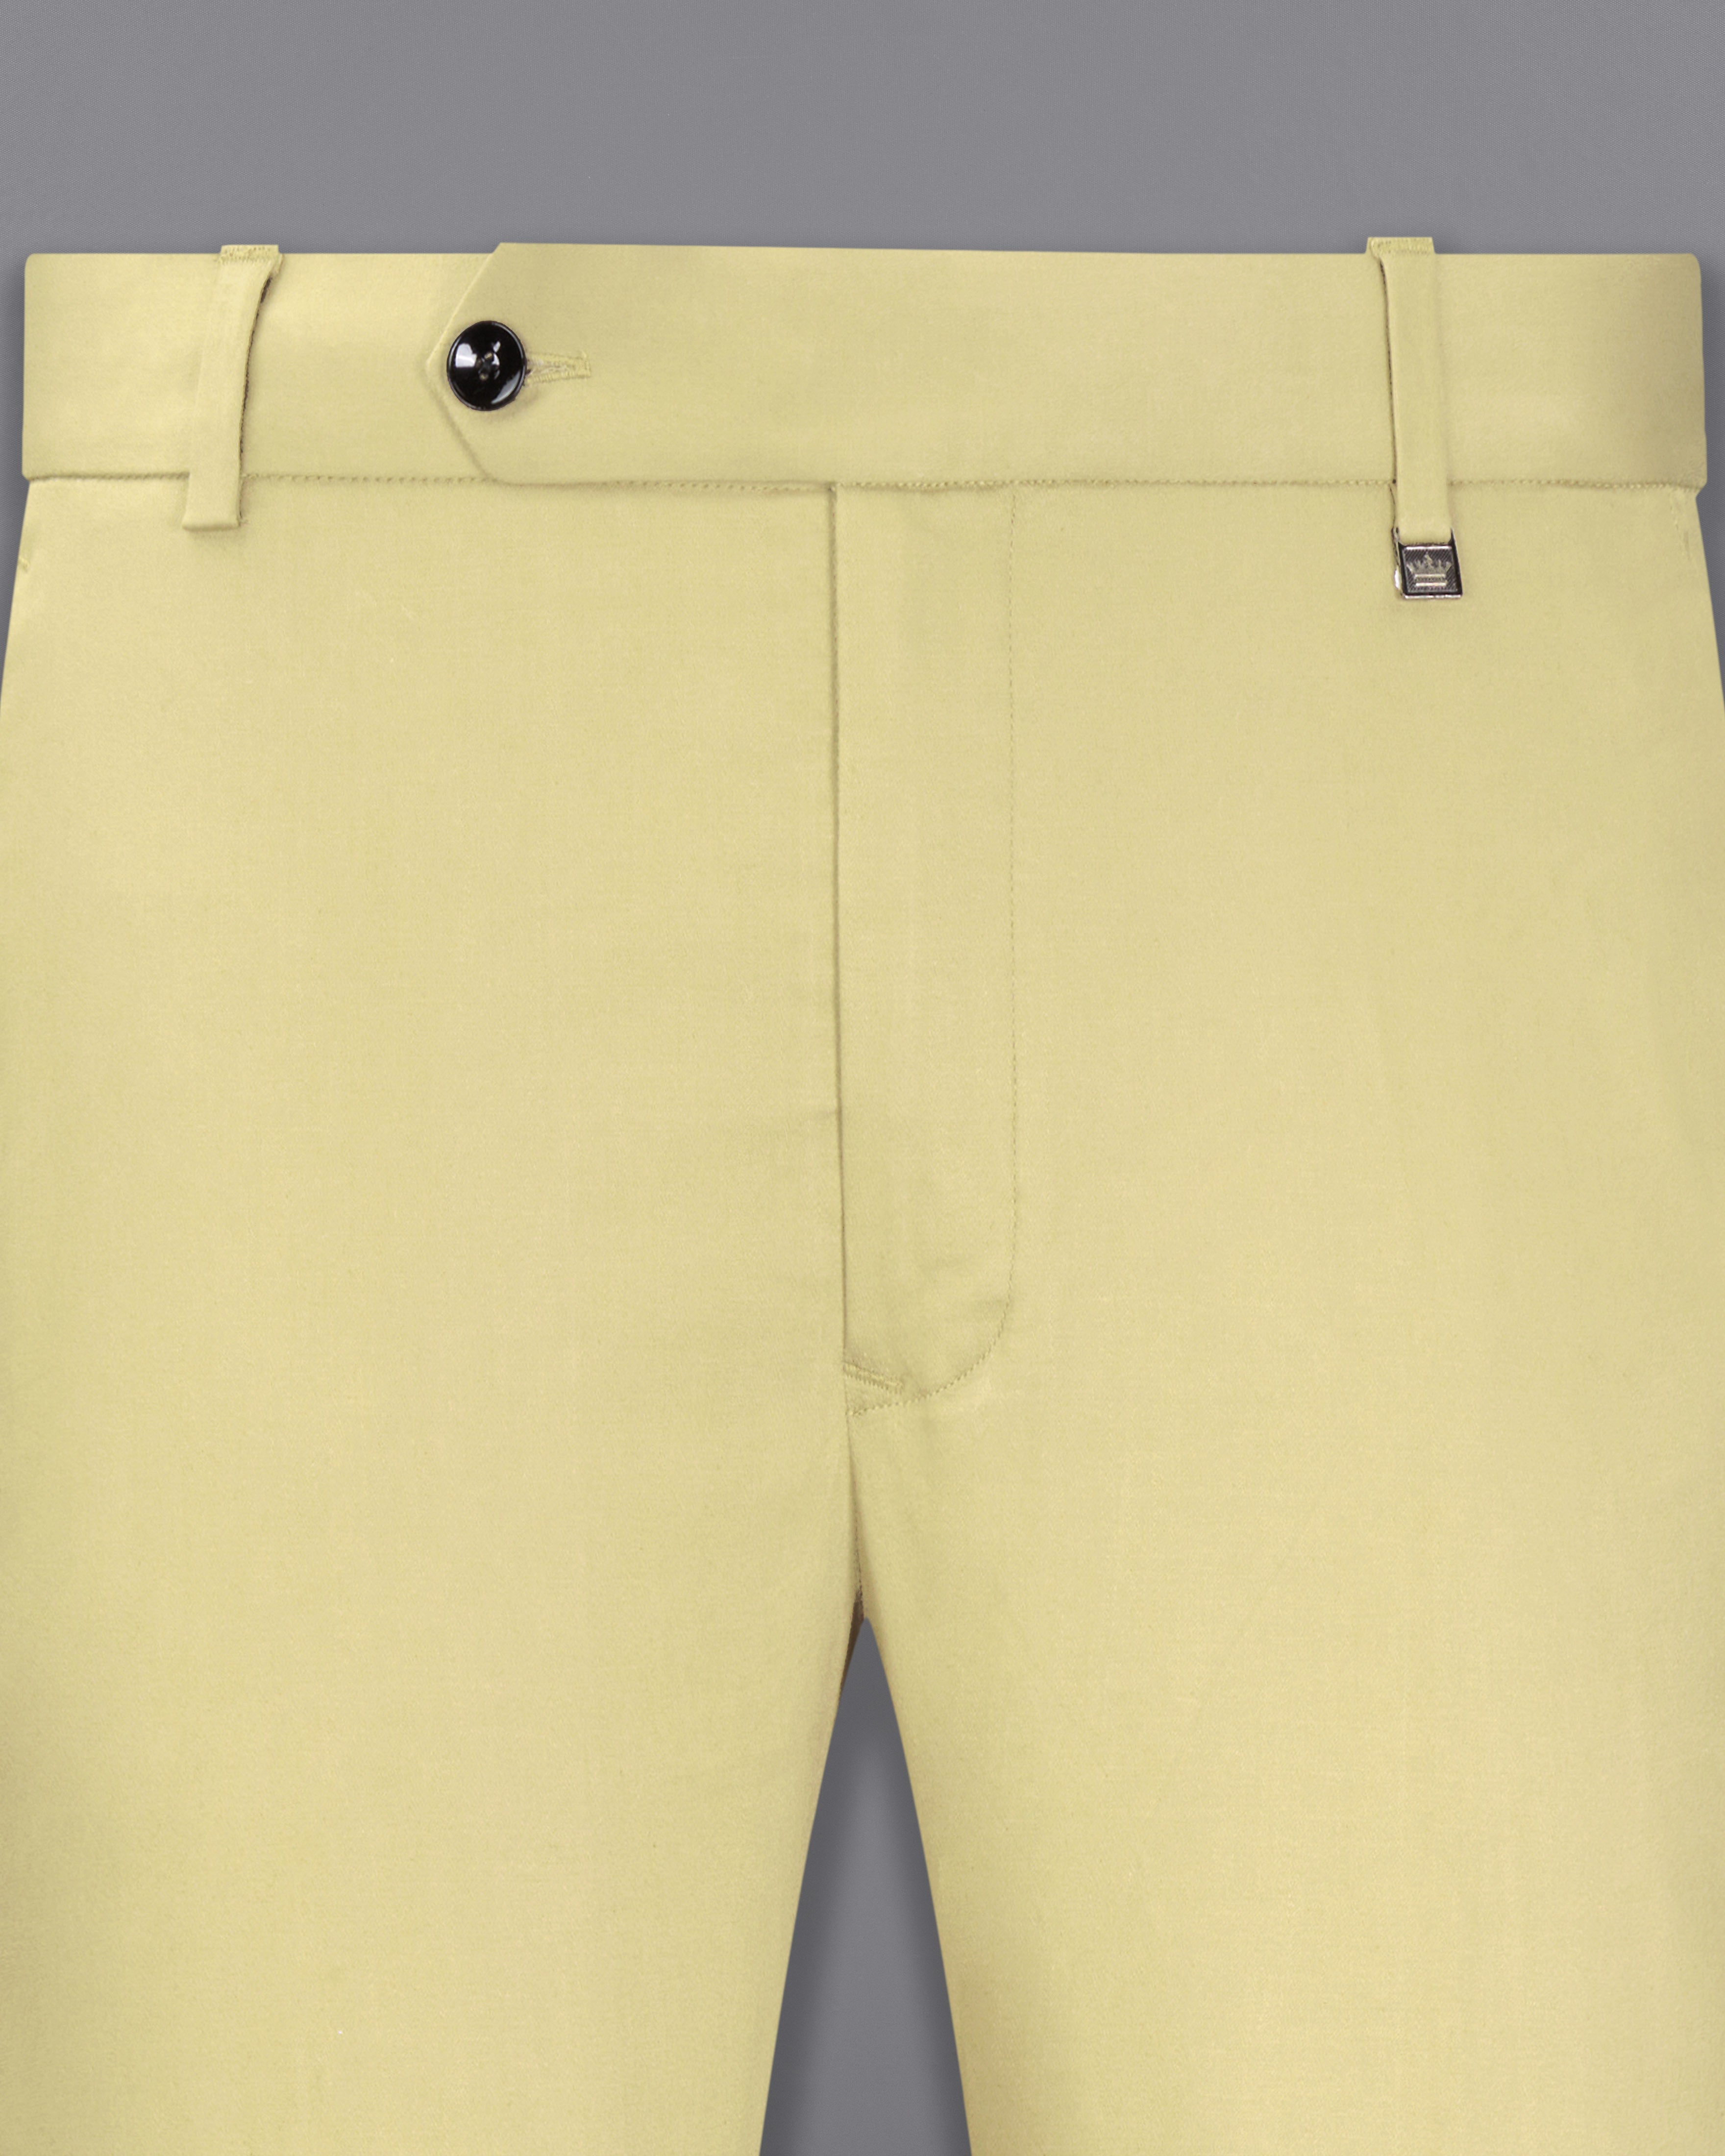 Amazon.com : Black Stewart Golf Trousers - Mens 'Par 5' Cotton - 30